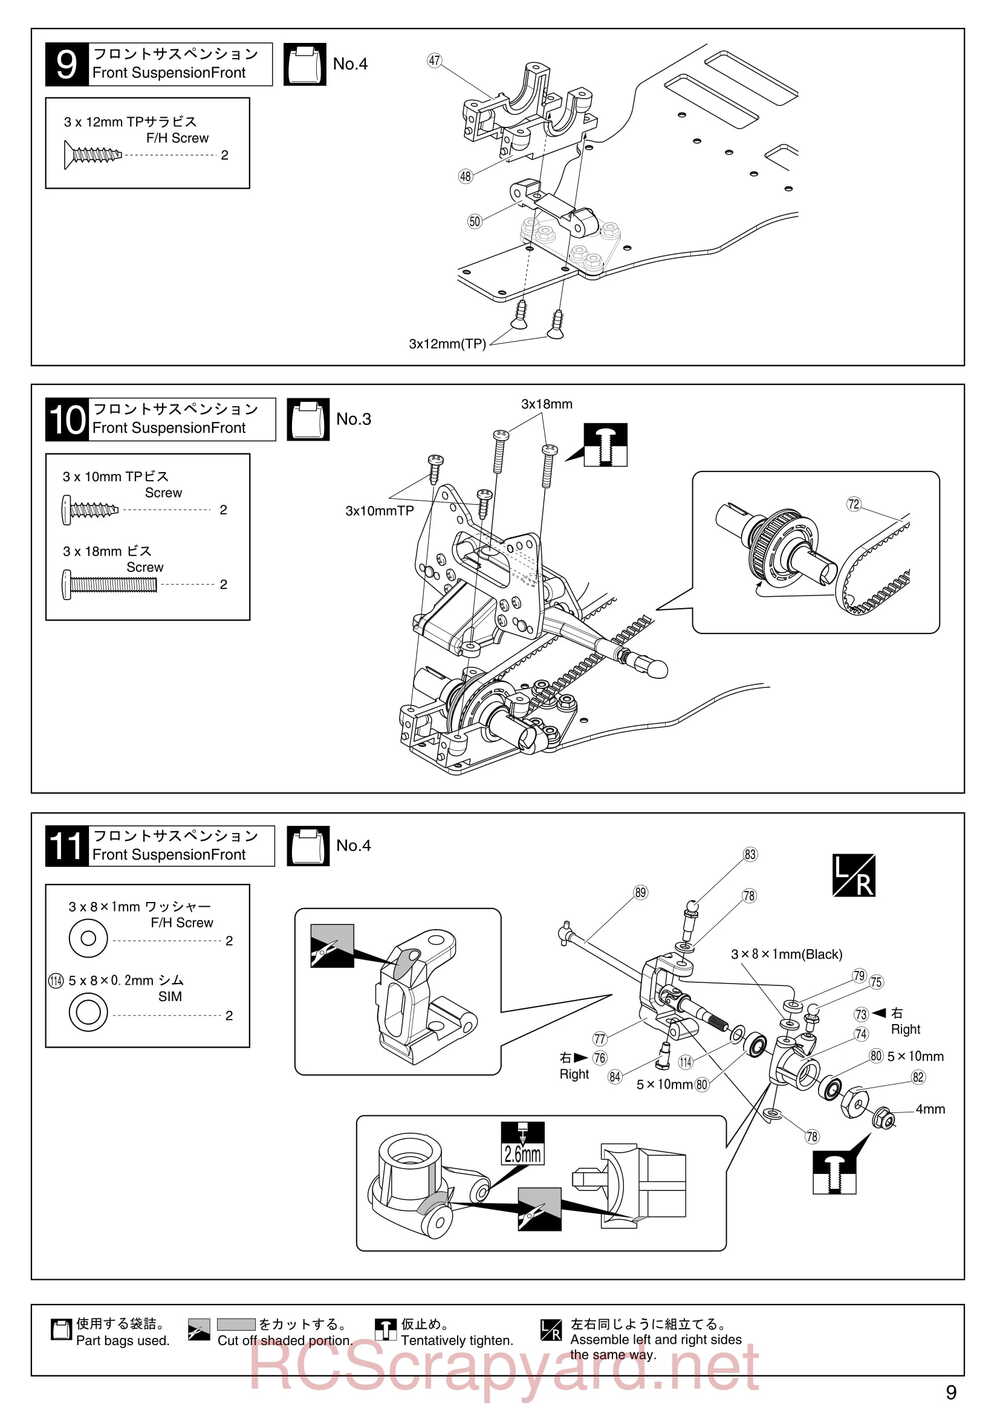 Kyosho - 30075 - Lazer-ZX-S-Evo - Manual - Page 09